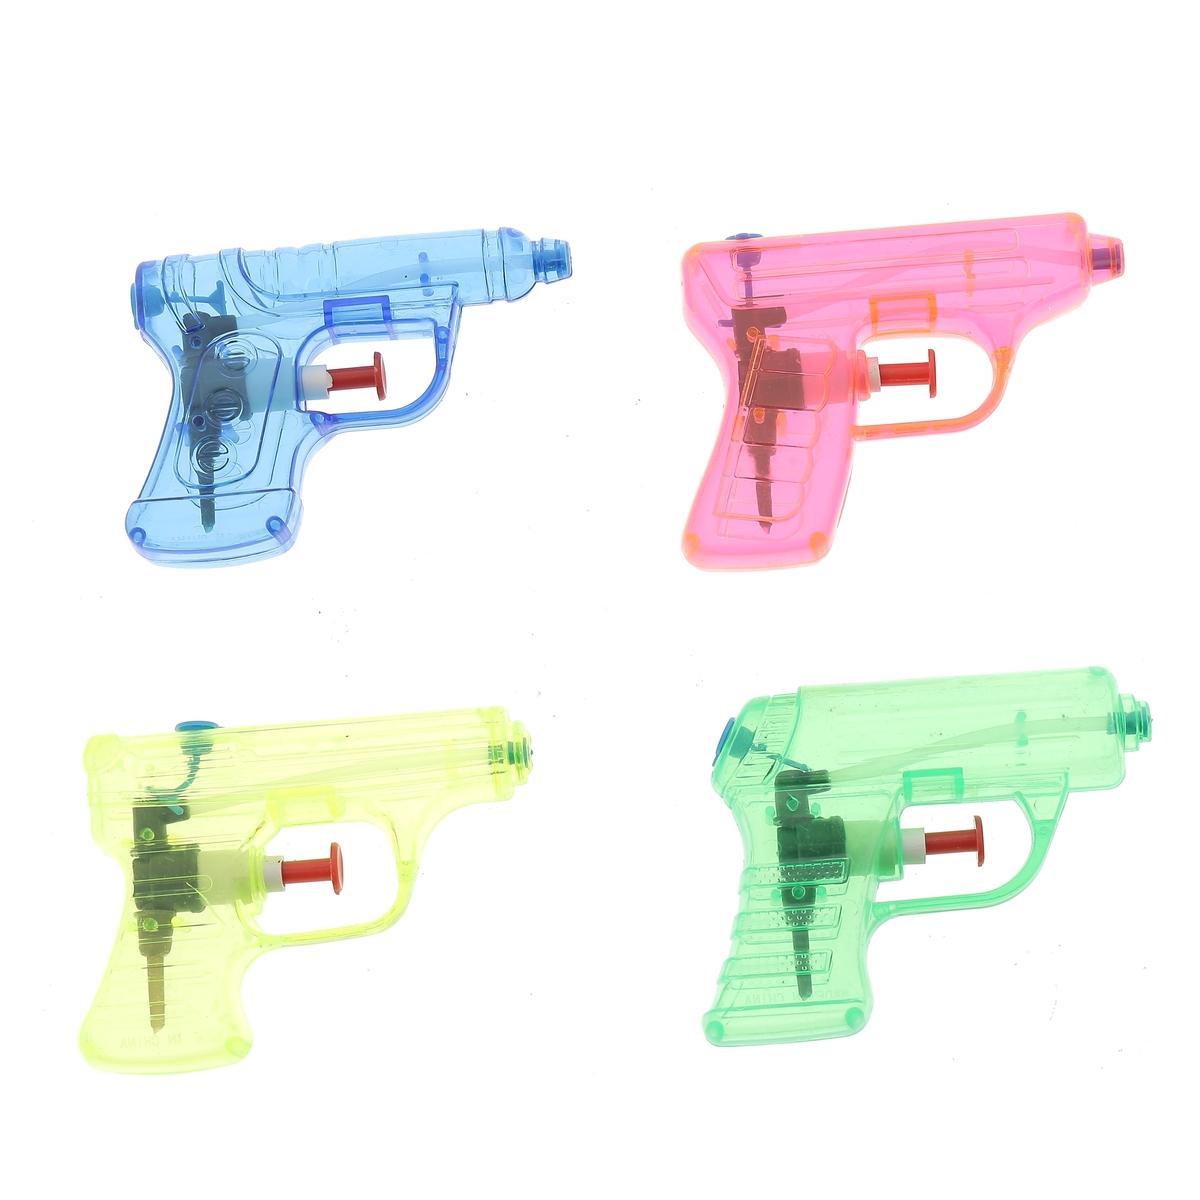 4 pistolets à eau - 6 x L 12 cm